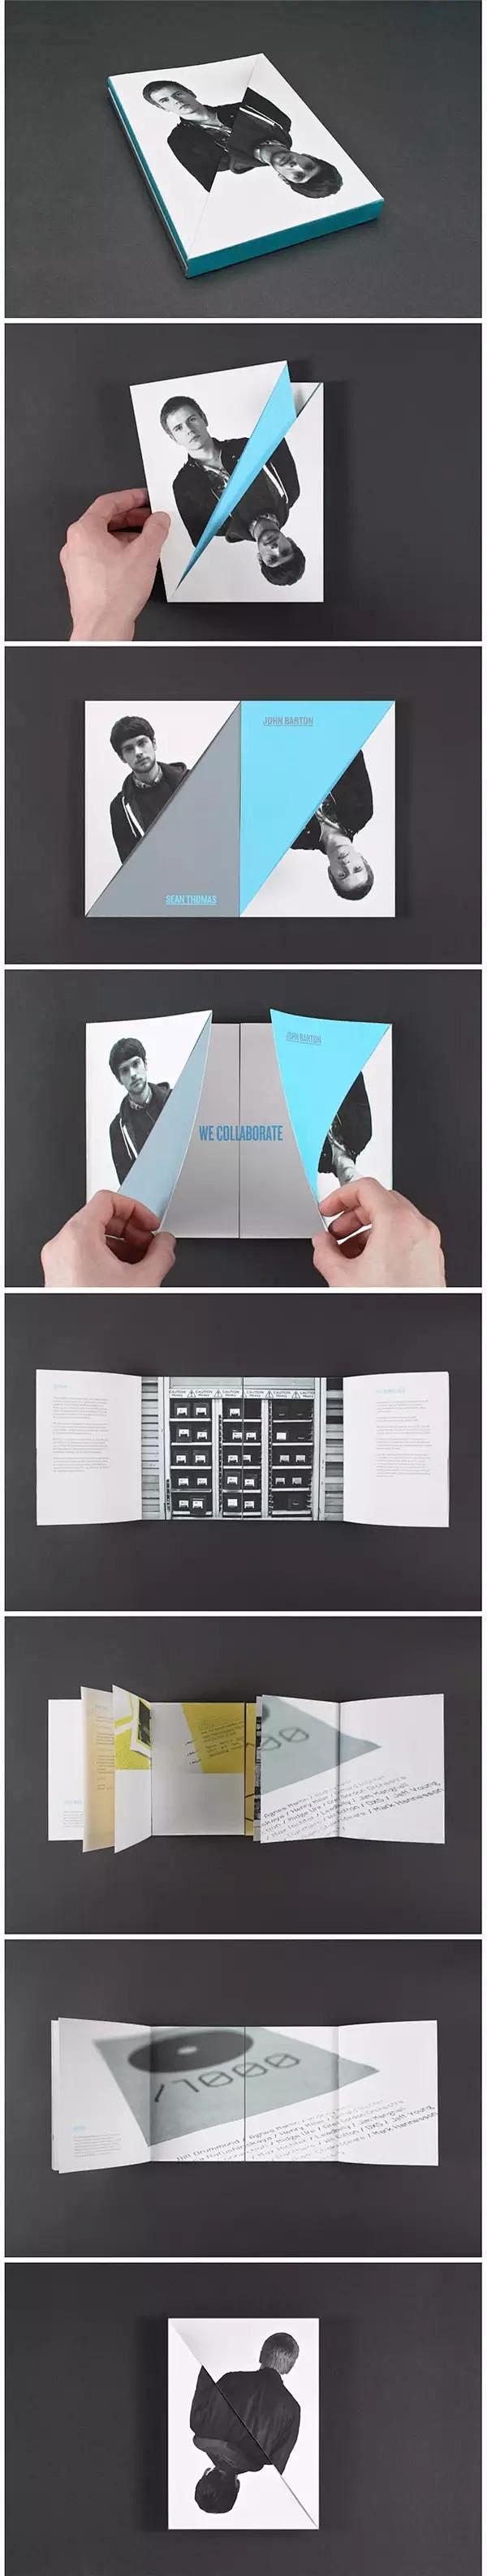 30例关于折页的宣传册设计